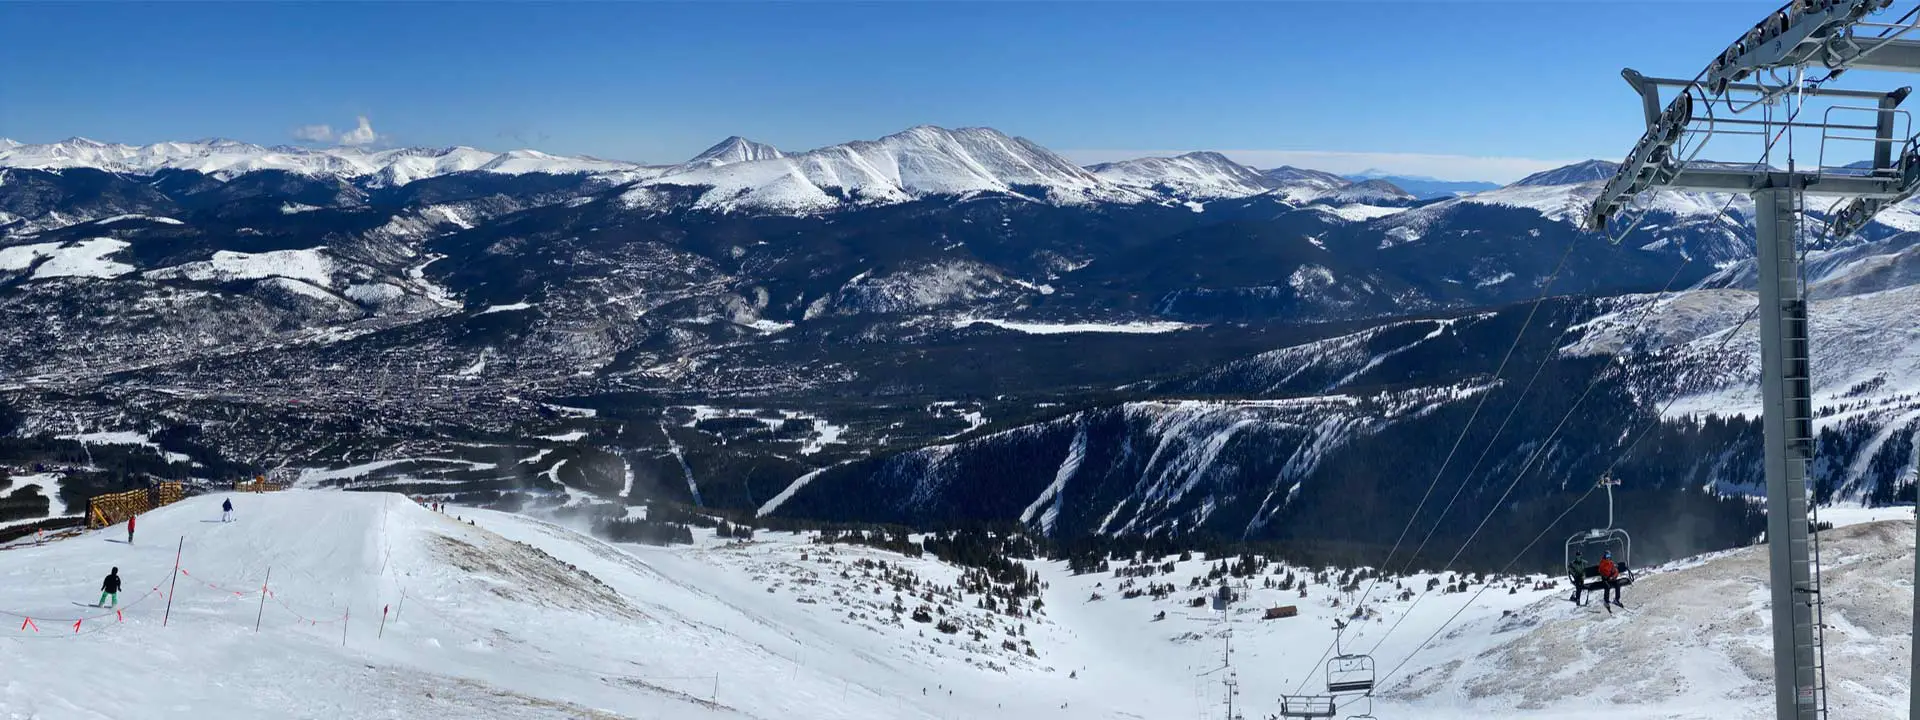 Breckenridge ski resort in Colorado.